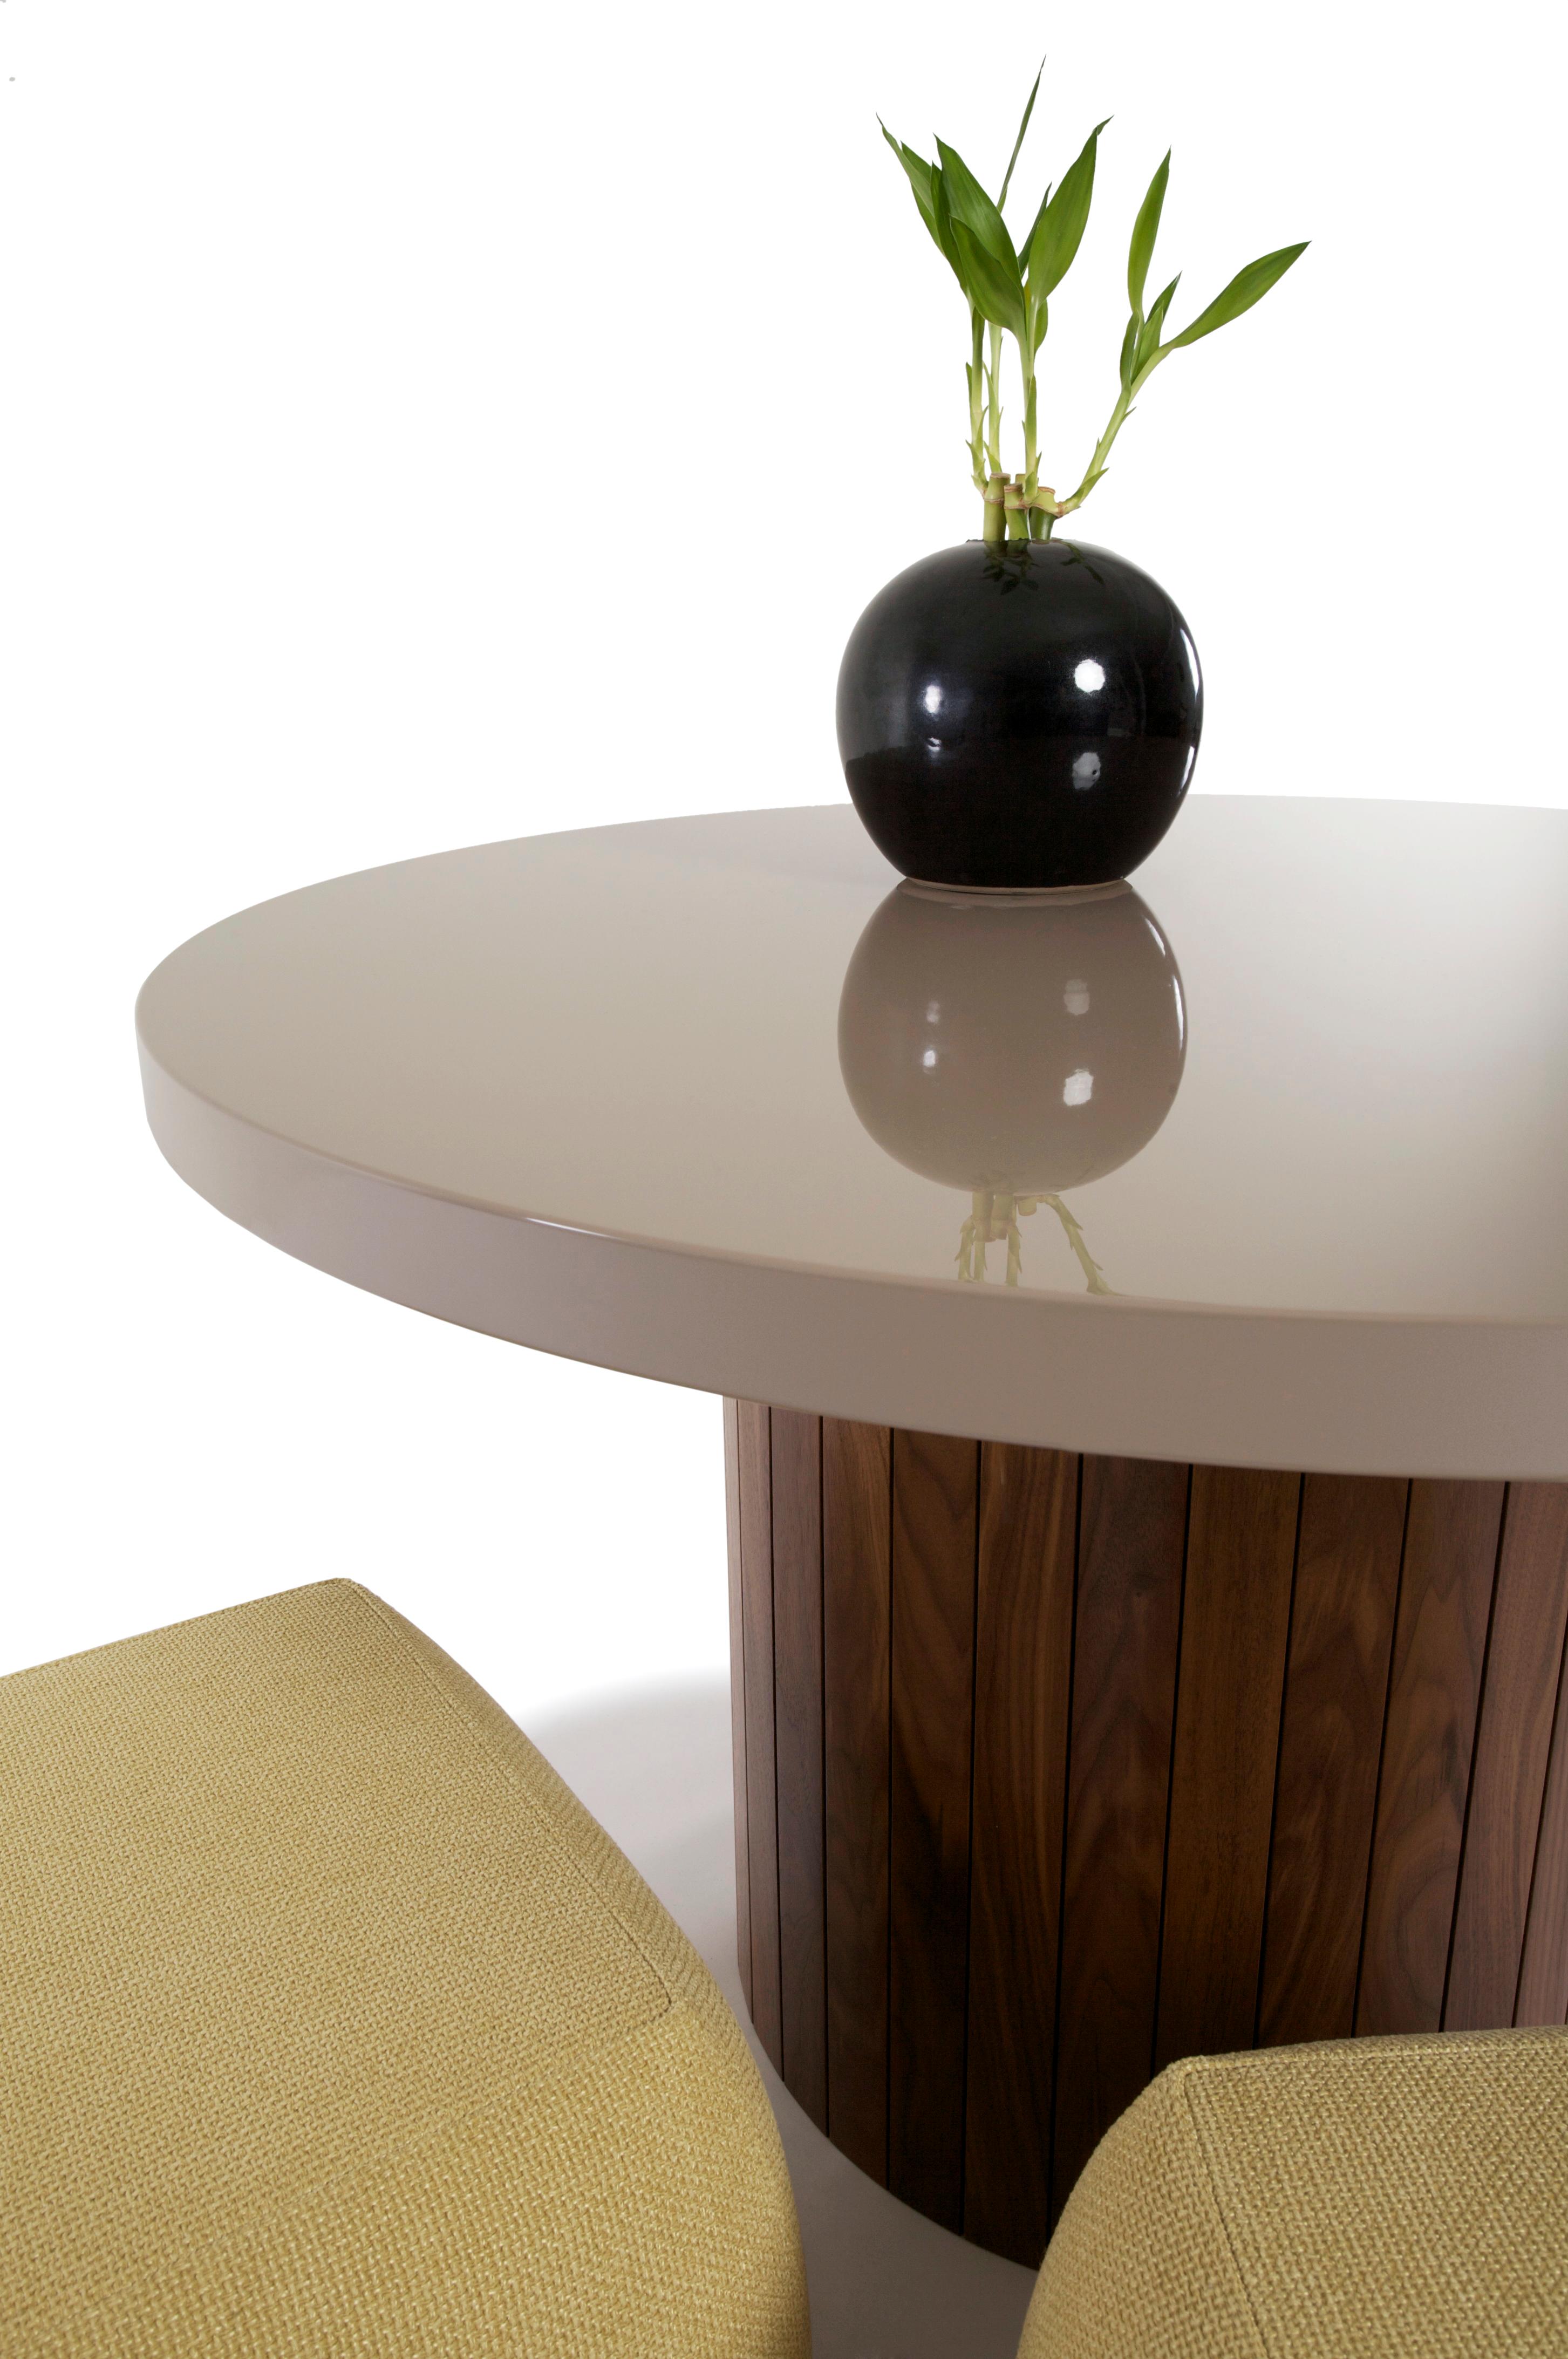 La combinaison de bois et de laque de la table Plank rappelle une époque différente où la valeur et la distinction étaient évaluées en fonction de l'artisanat et de la simplicité. Le plateau en laque ramène cette table au milieu du 20e siècle et la